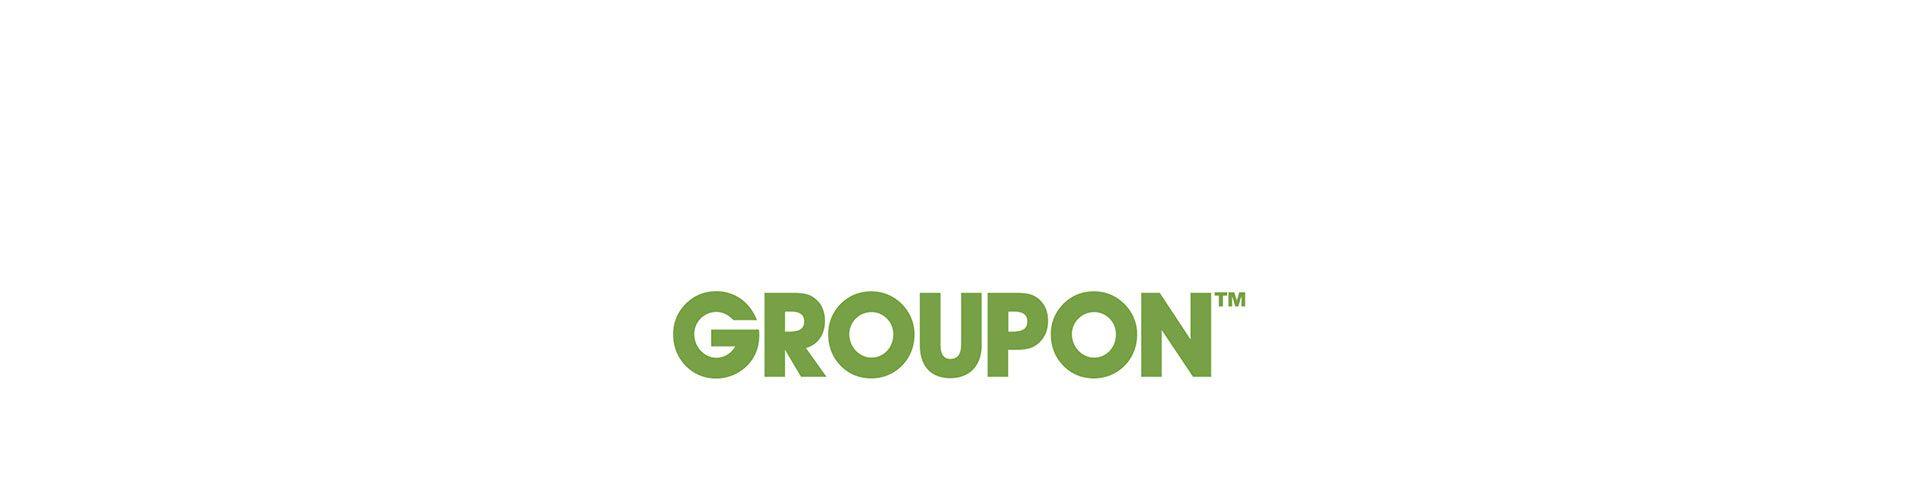 Groupon Logo - Groupon Services – Asha SalonSpa